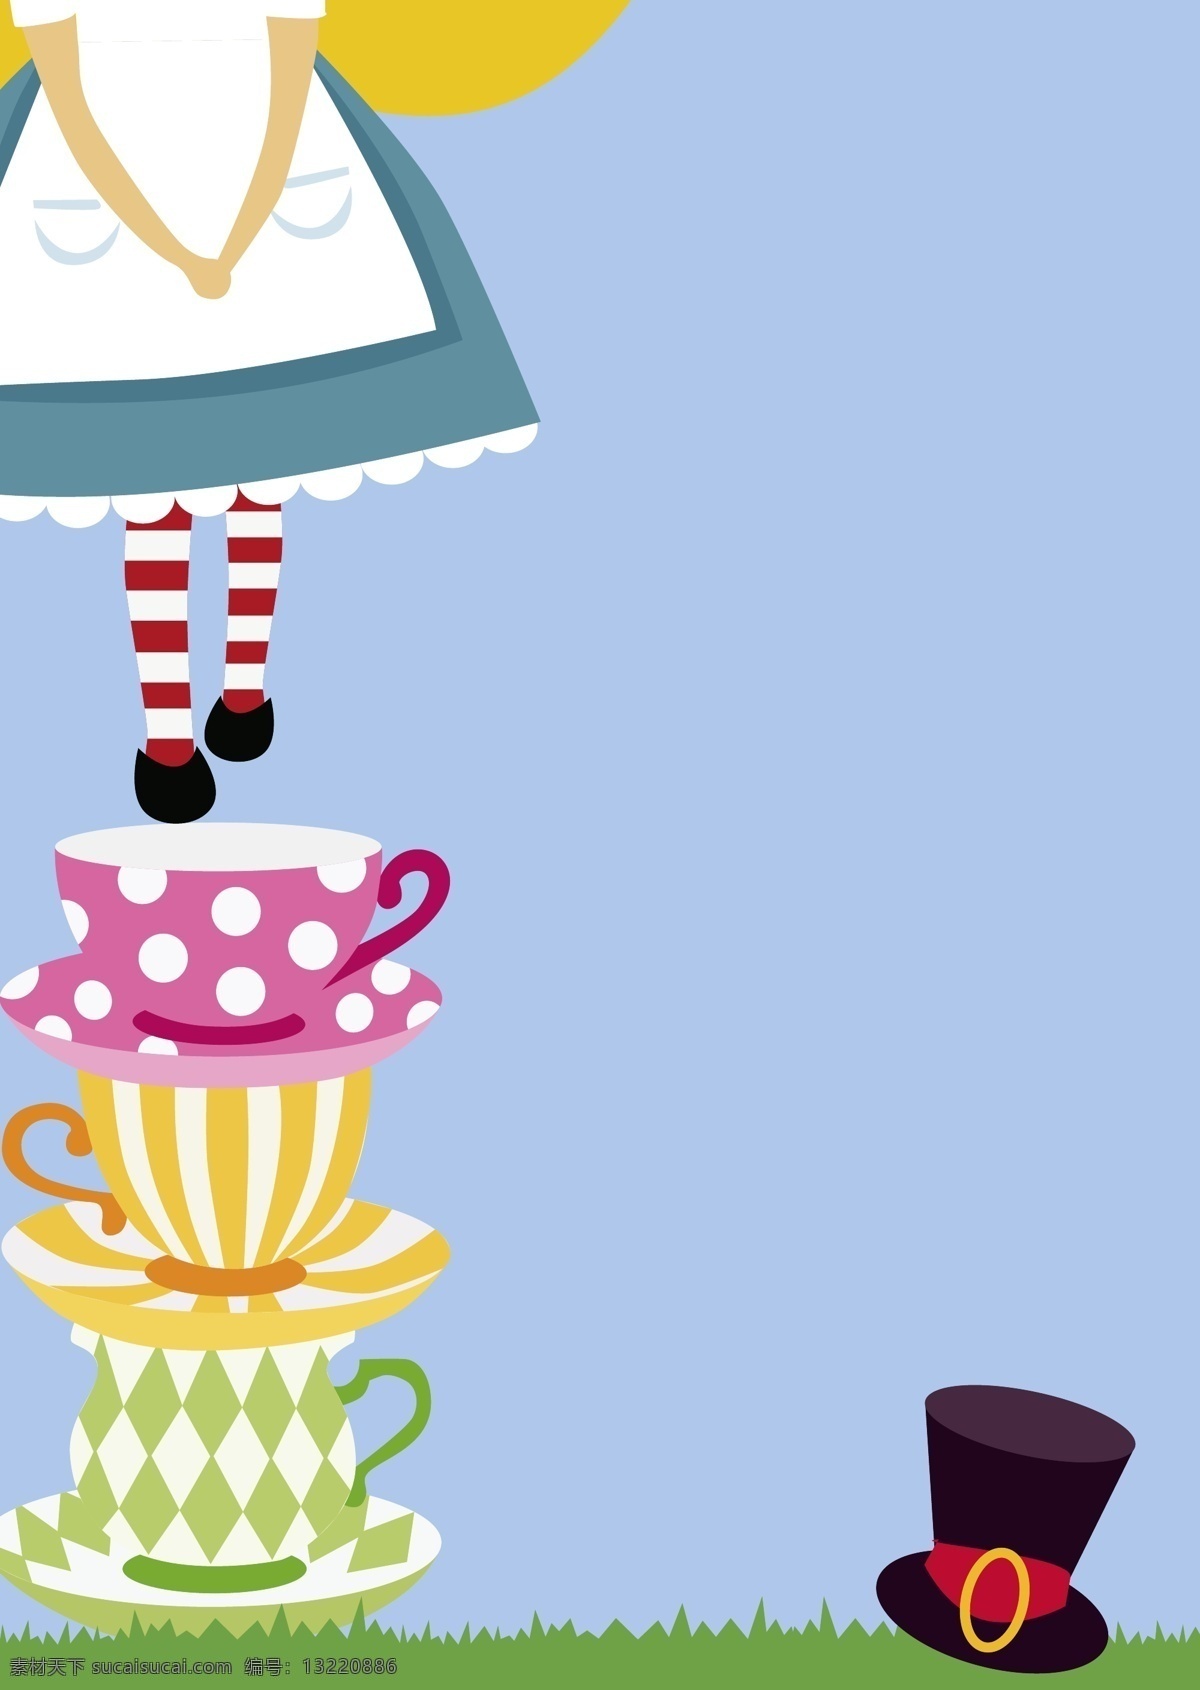 爱丽丝 生日 快乐 插画 茶杯 金发 卡片 卡通 礼帽 女孩 生日快乐 矢量图 手绘 童趣